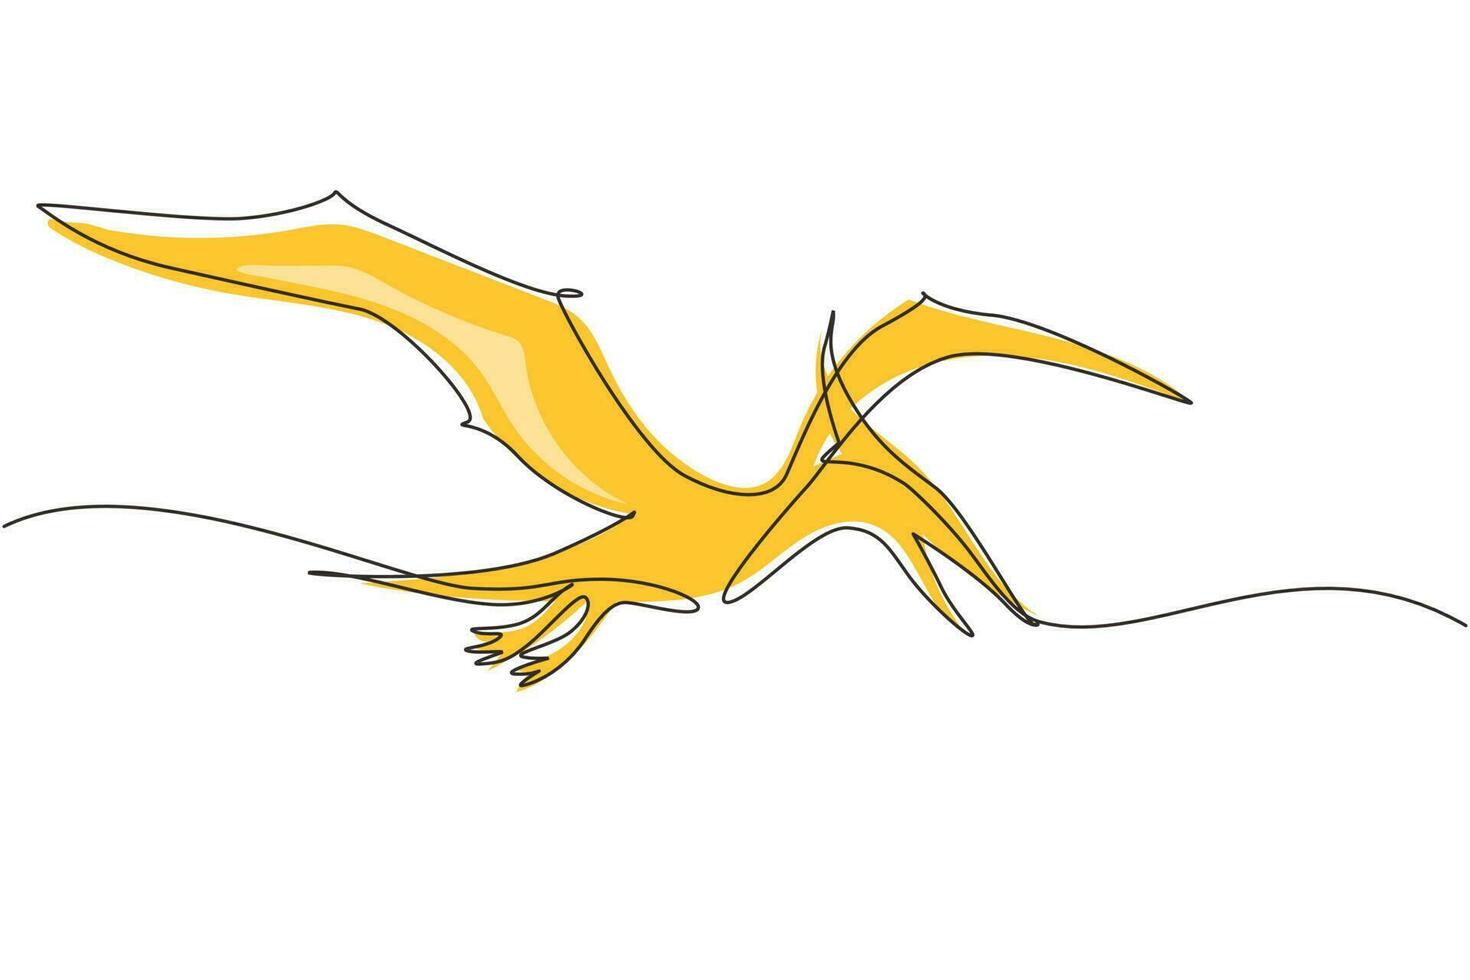 dibujo continuo de una línea dinosaurio pterodáctilo volador aislado sobre fondo blanco. animales antiguos extintos. Historia animal para la educación. ilustración gráfica de vector de diseño de dibujo de una sola línea